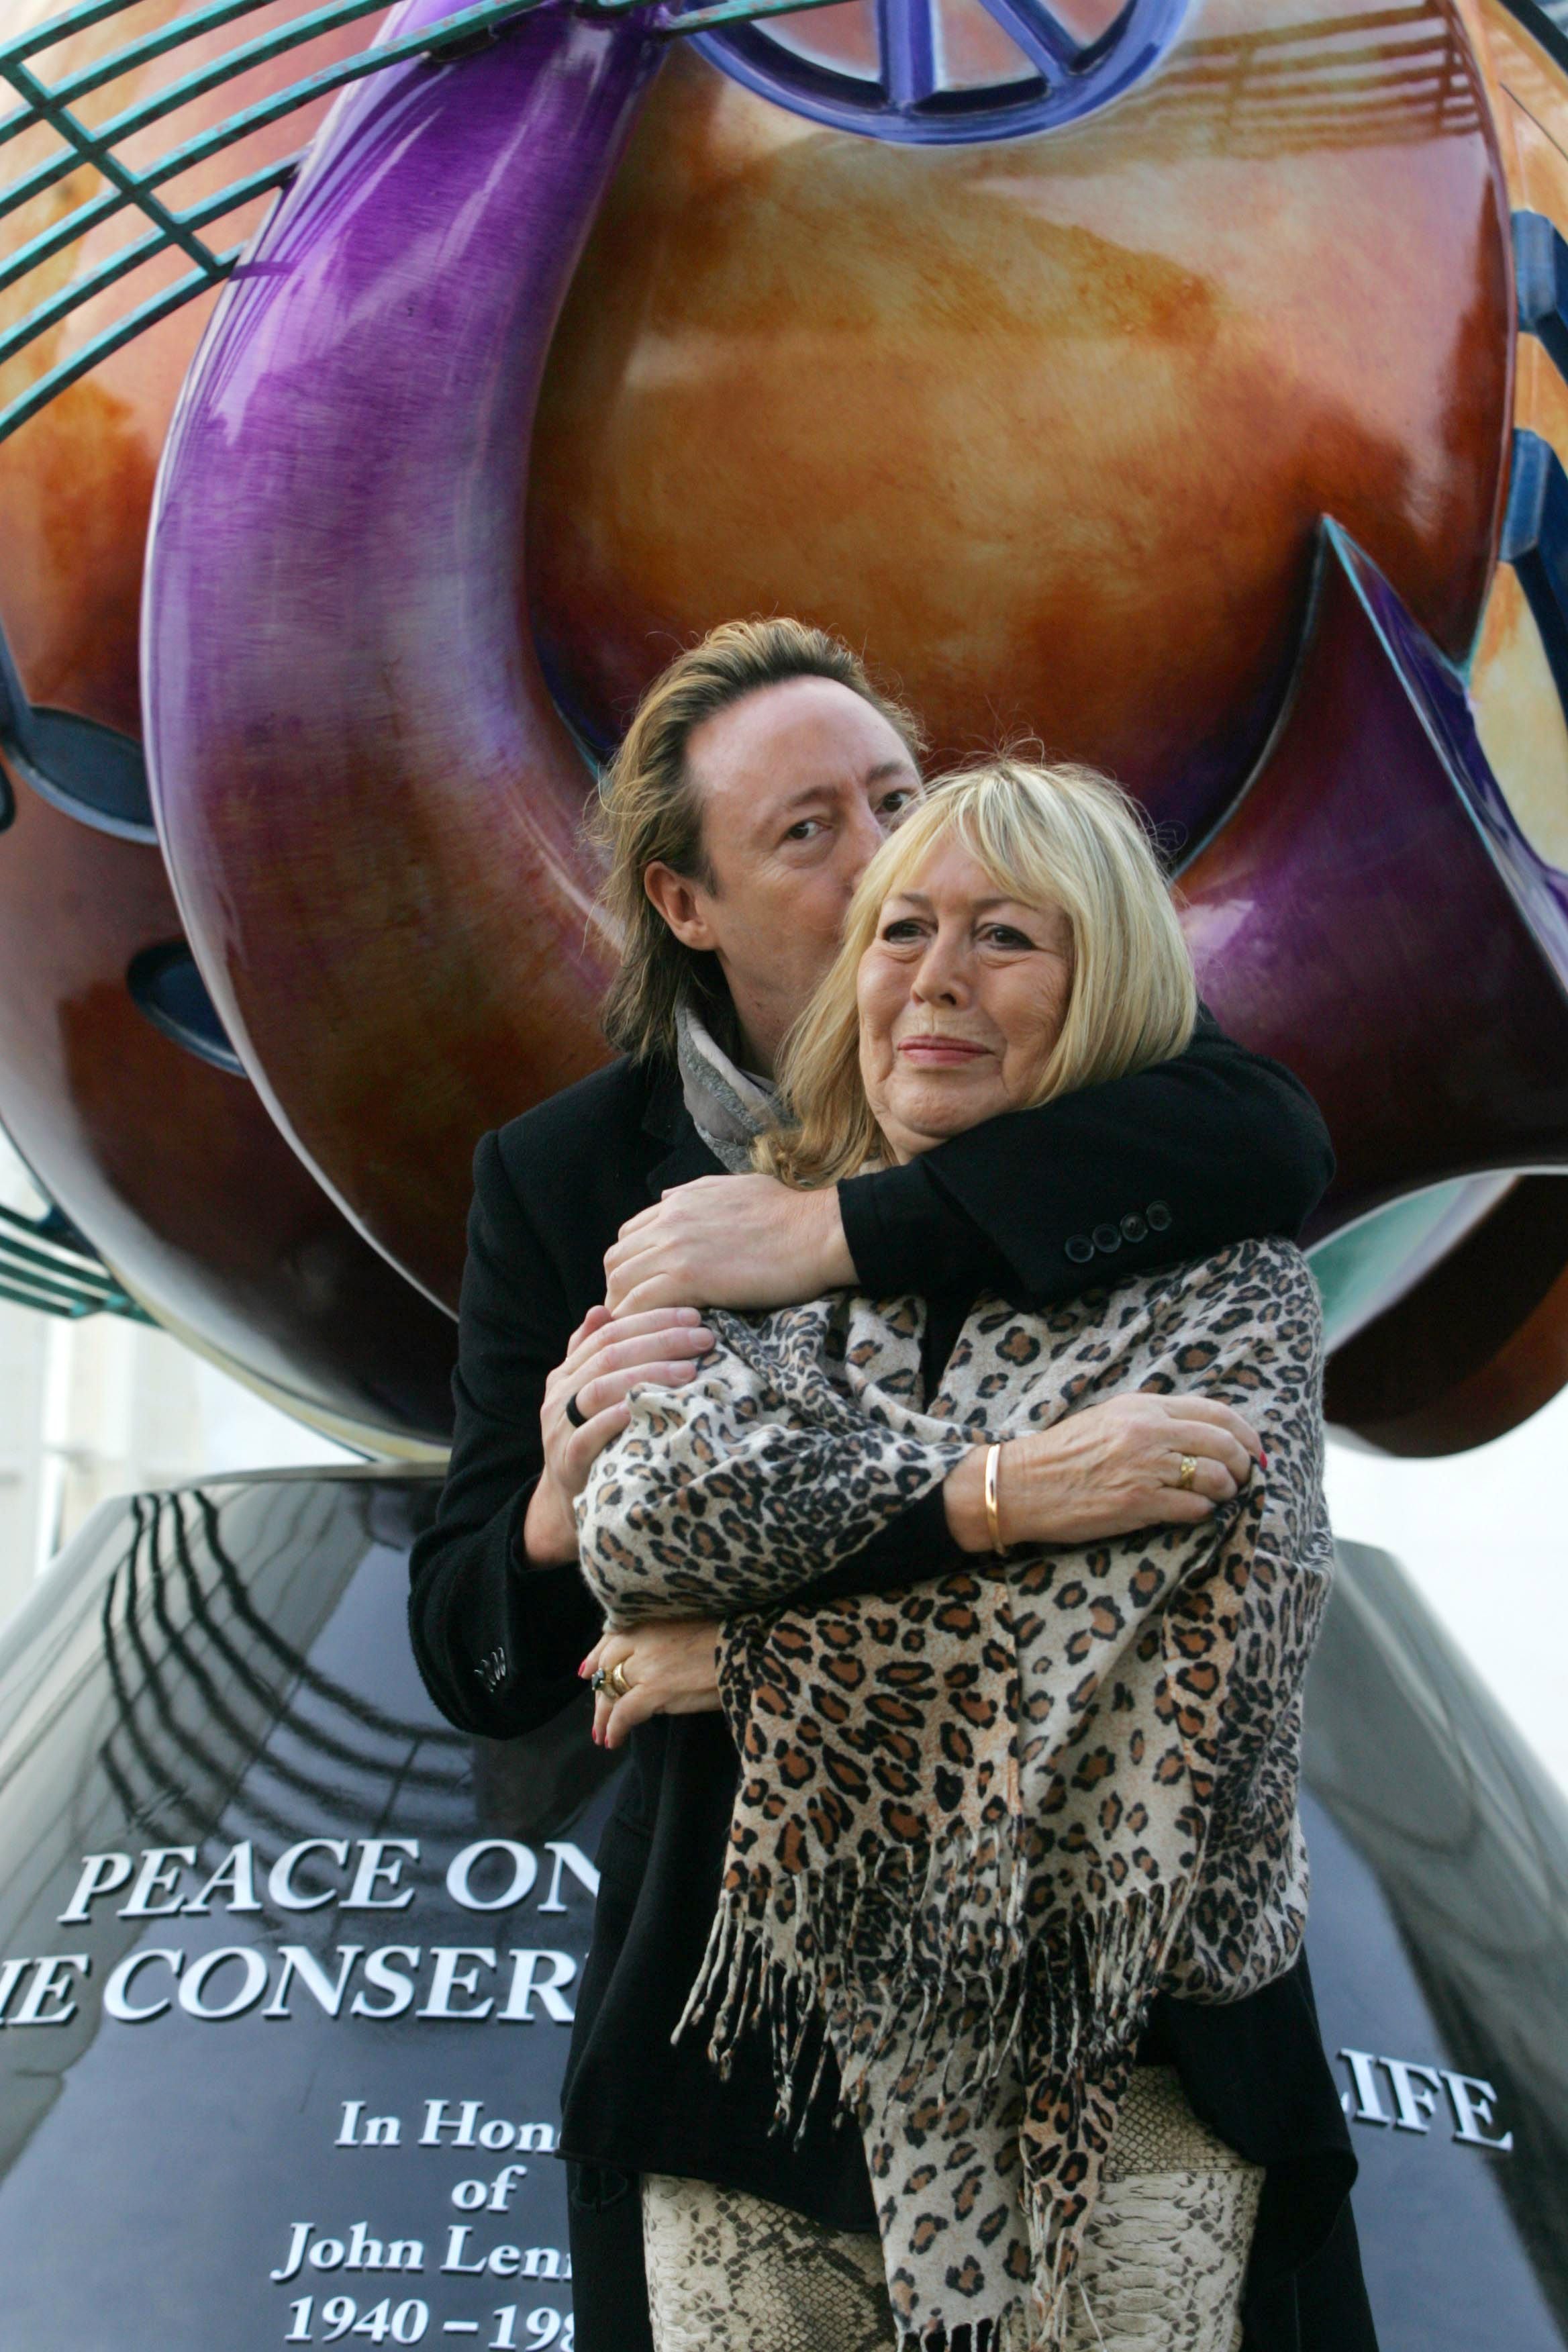 Julian Lennon abraça sua mãe Cynthia em Liverpool durante a inauguração de um monumento à paz para celebrar o aniversário de 70 anos de John Lennon, em outubro de 2010.